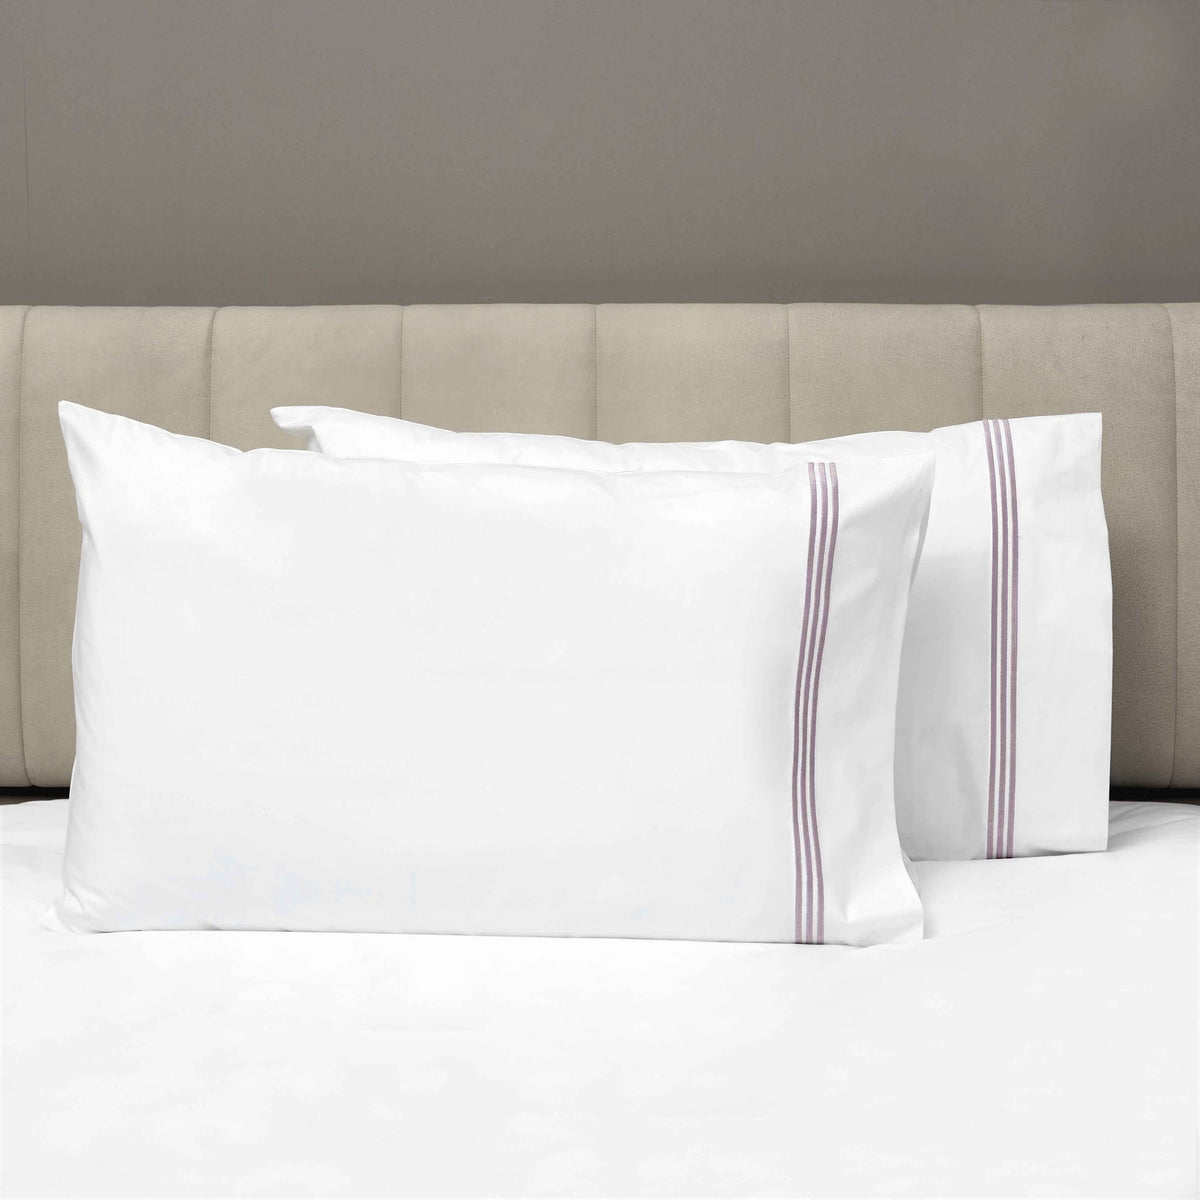 Pair of Pillowcases of Signoria Platinum Percale Bedding in White/Thistle Color